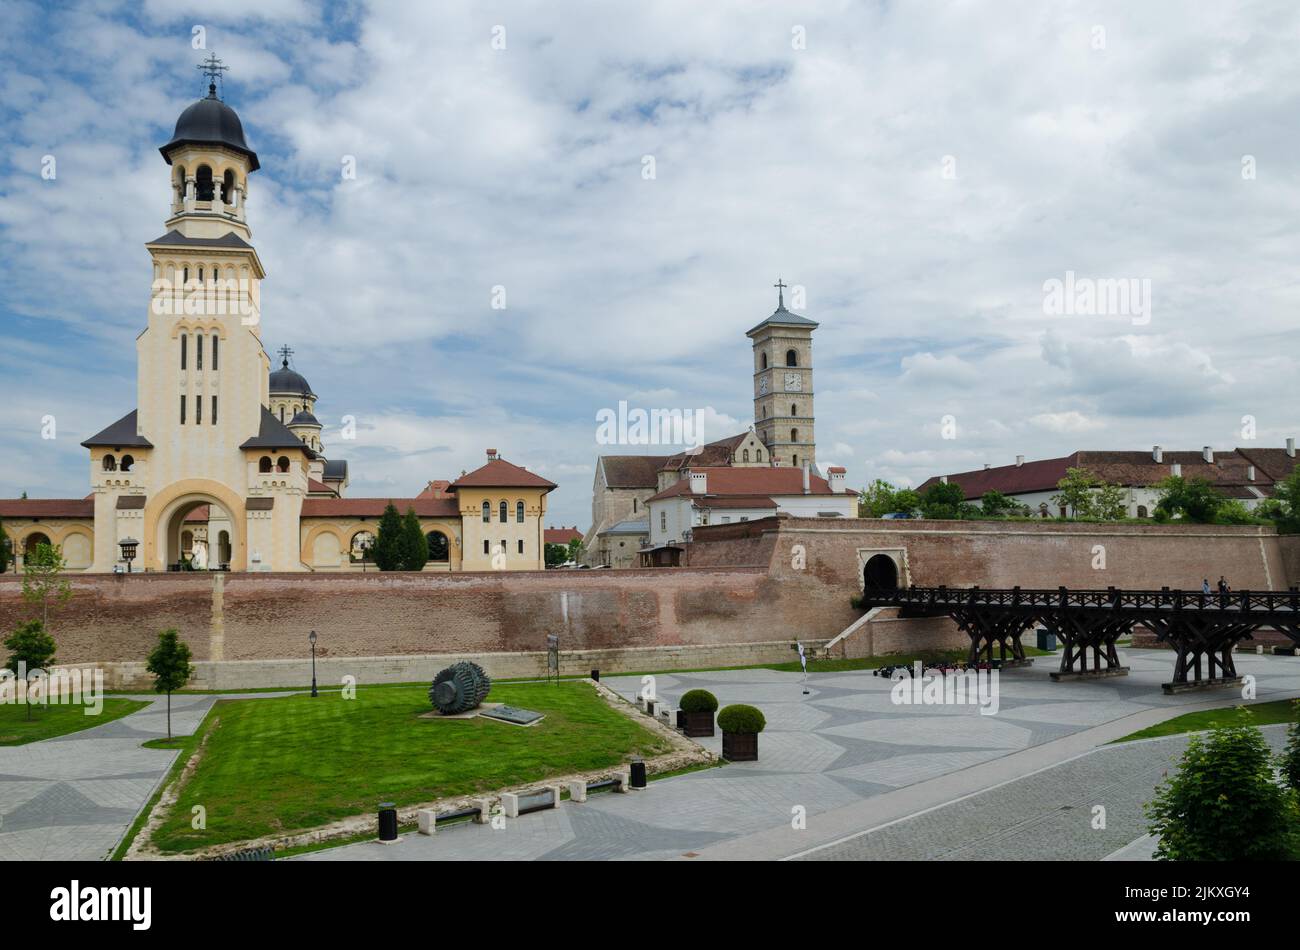 La vista del campanile della Cattedrale di Coronazione con la Cattedrale di San Michele. Alba Iulia, Romania. Foto Stock